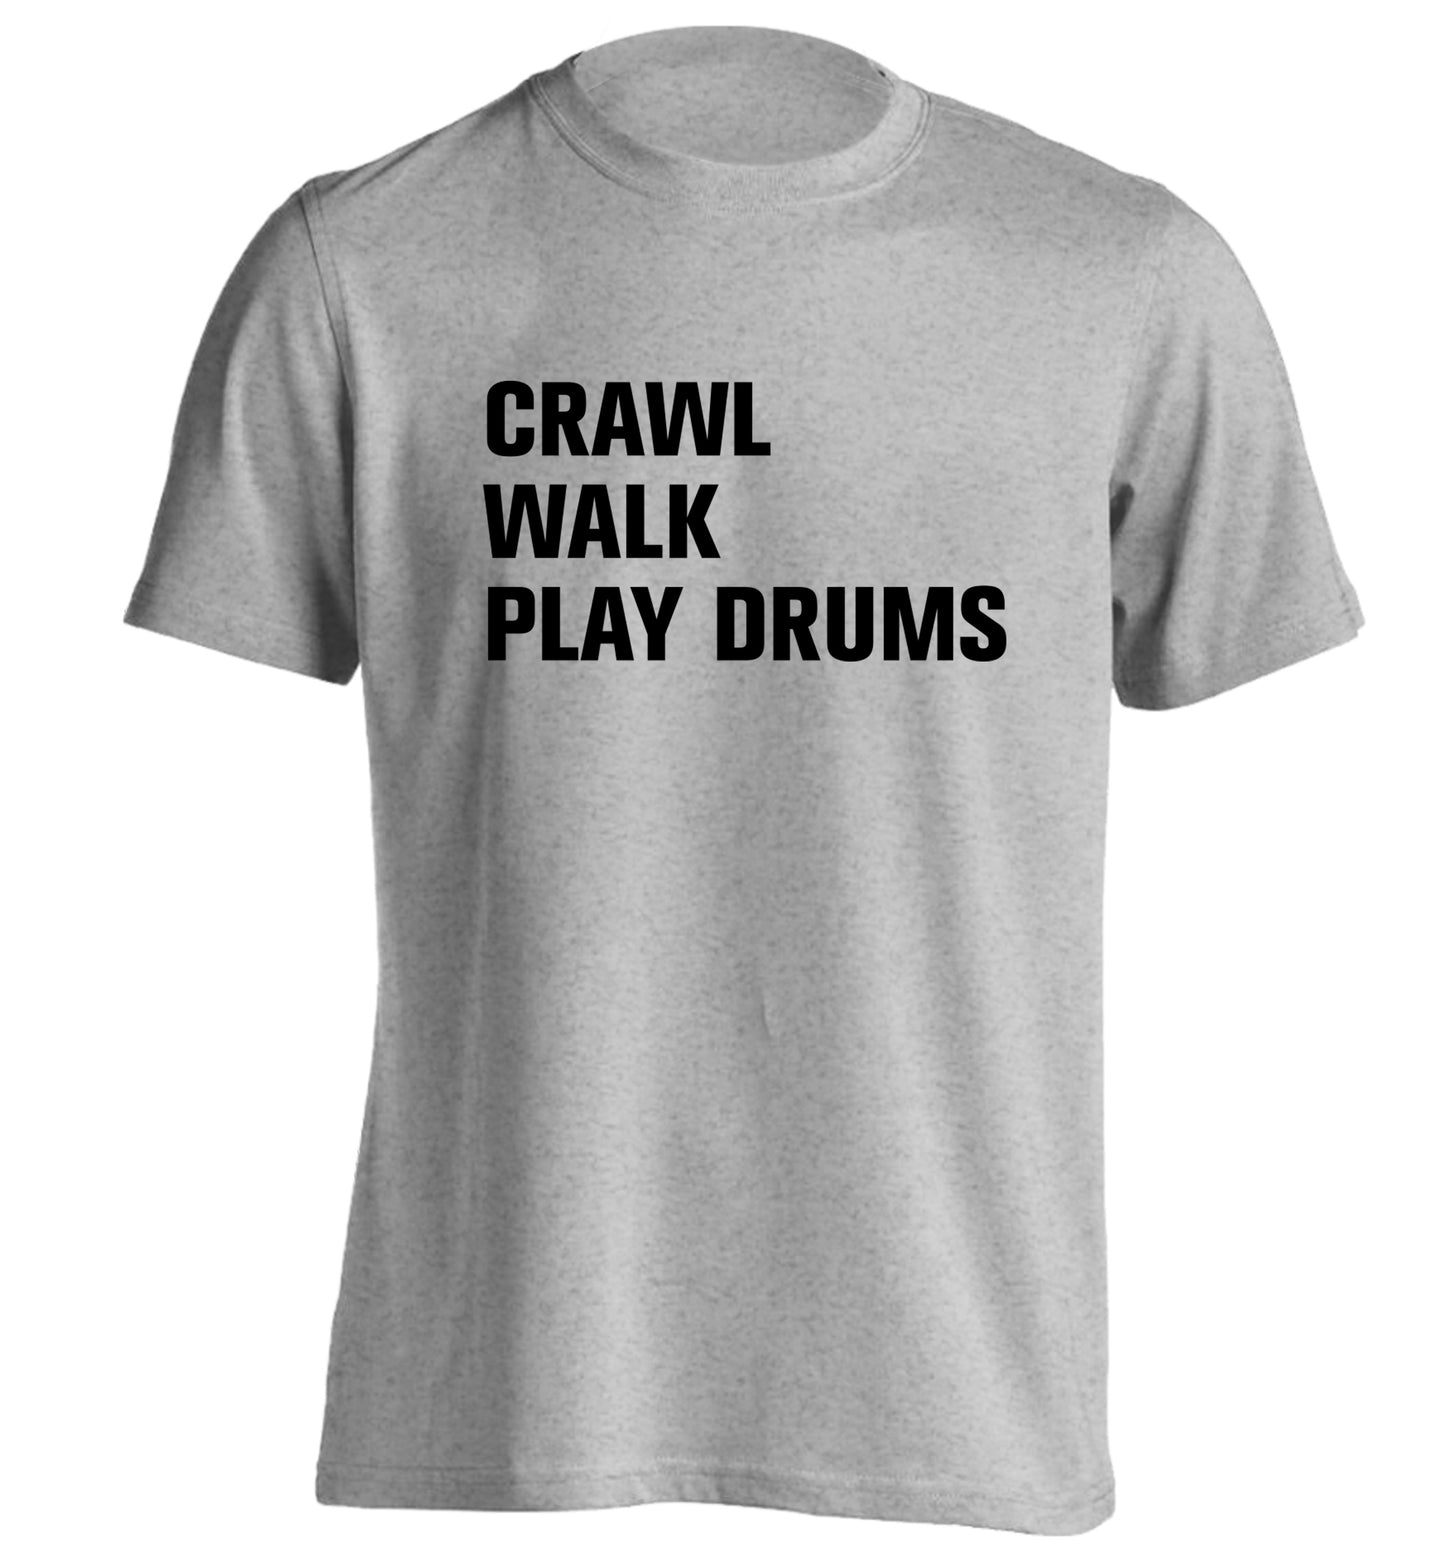 Crawl walk play drums adults unisex grey Tshirt 2XL